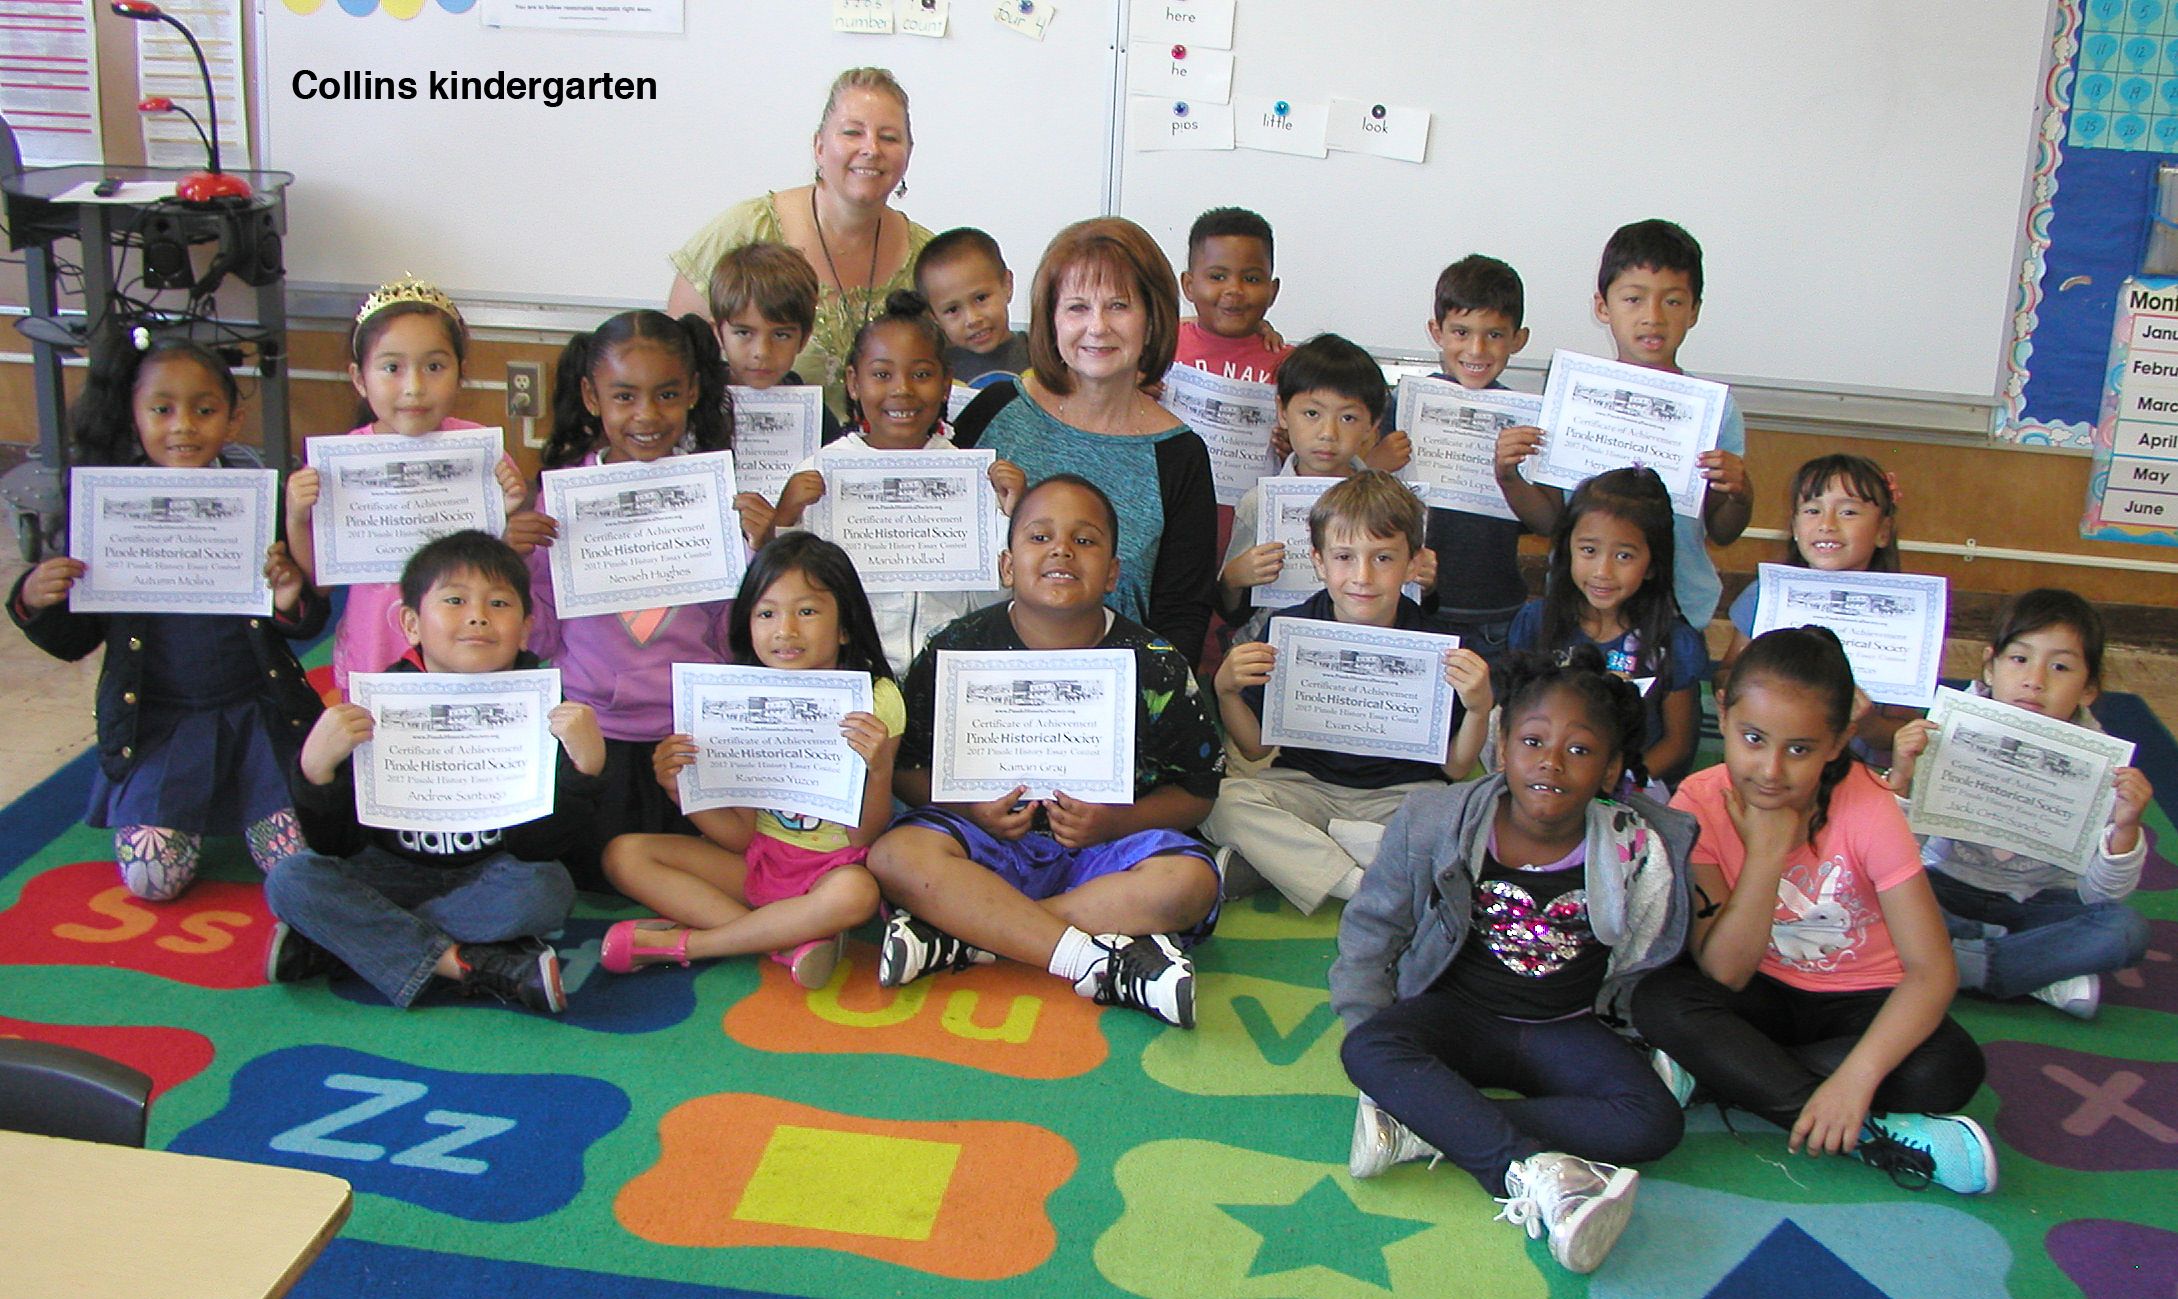 Mayor Debbie Long and kindergarten students at Collins Elementary School